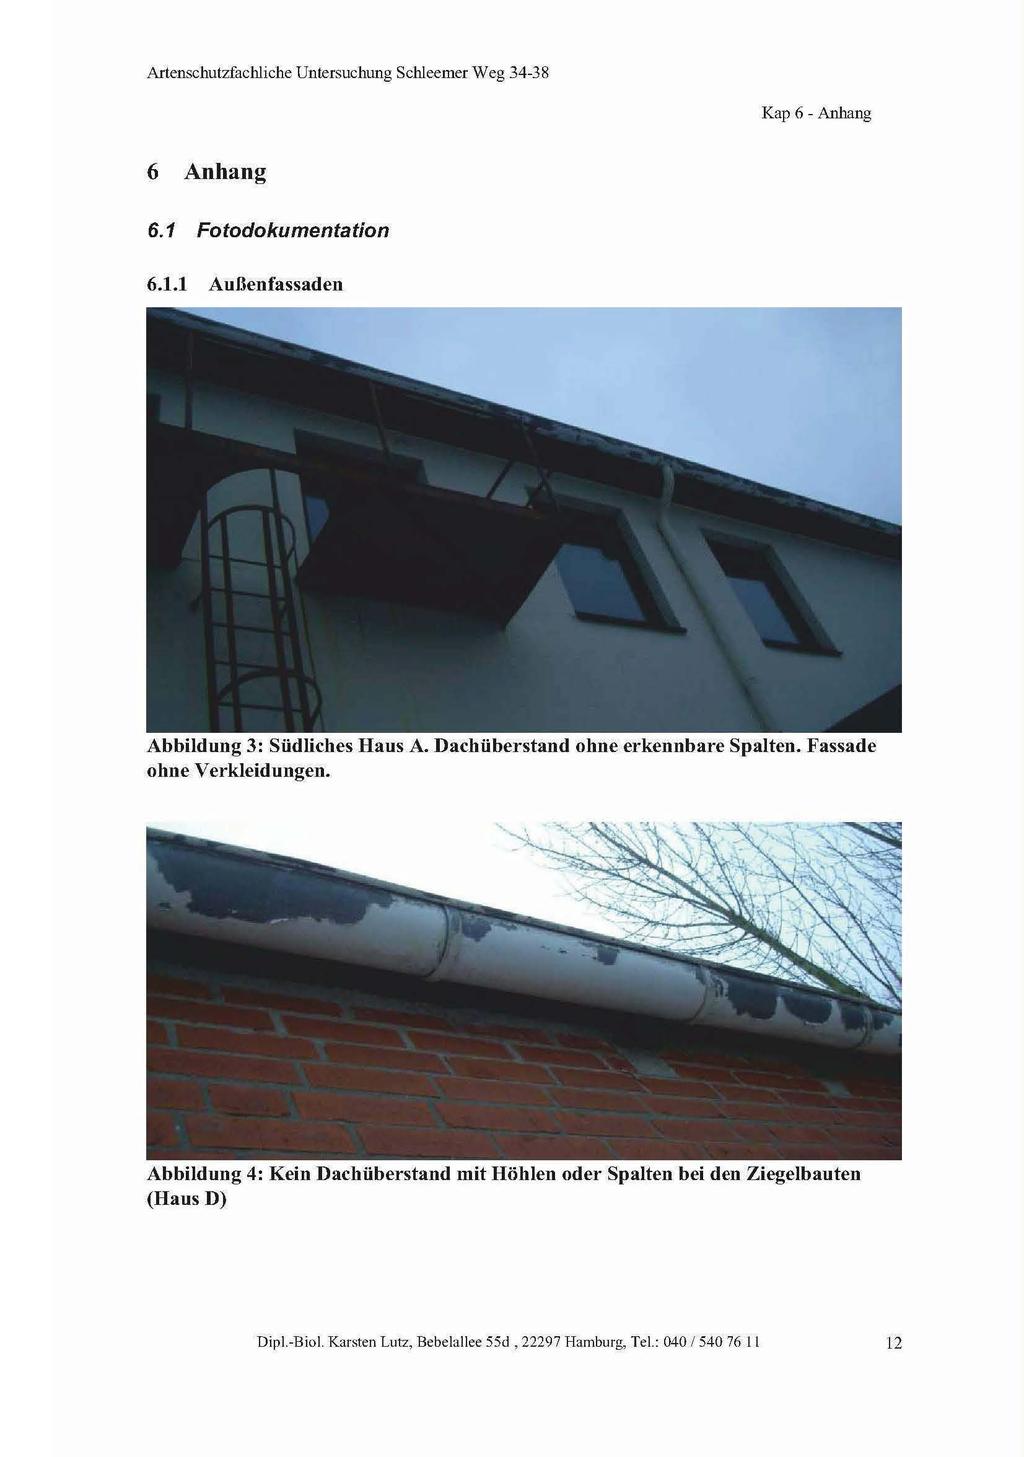 Kap 6 - Anhang 6 Anhang 6.1 Fotodokumentation 6.1.1 Außenfassaden Abbildung 3: Südliches Haus A. Dachüberstand ohne erkennbare Spalten. Fassade ohne Verkleidungen.